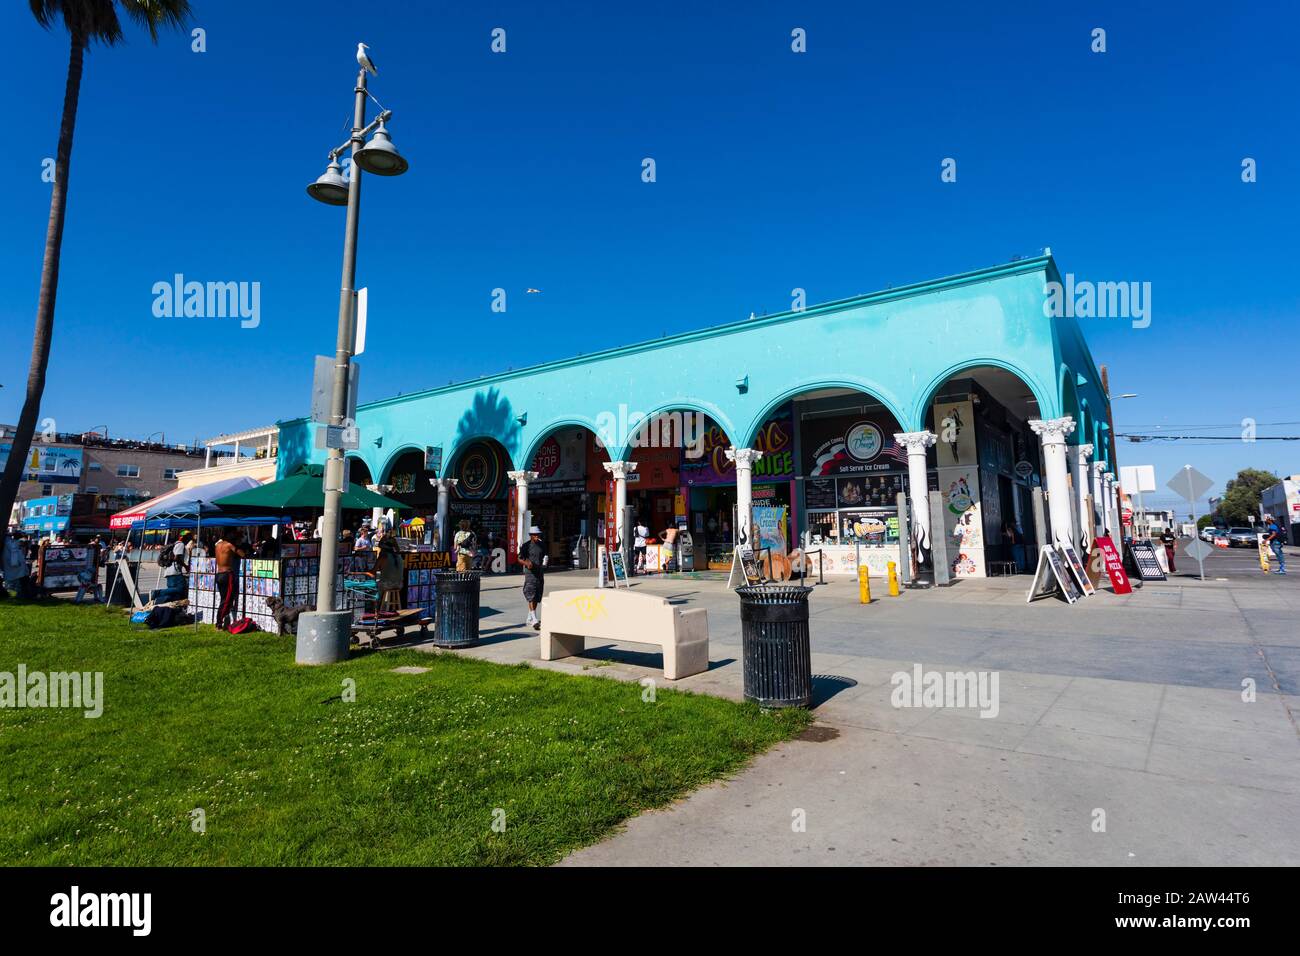 Venice Beach Park, Santa Monica, Los Angeles, Californie, États-Unis d'amérique. ÉTATS-UNIS. Octobre 2019 Banque D'Images